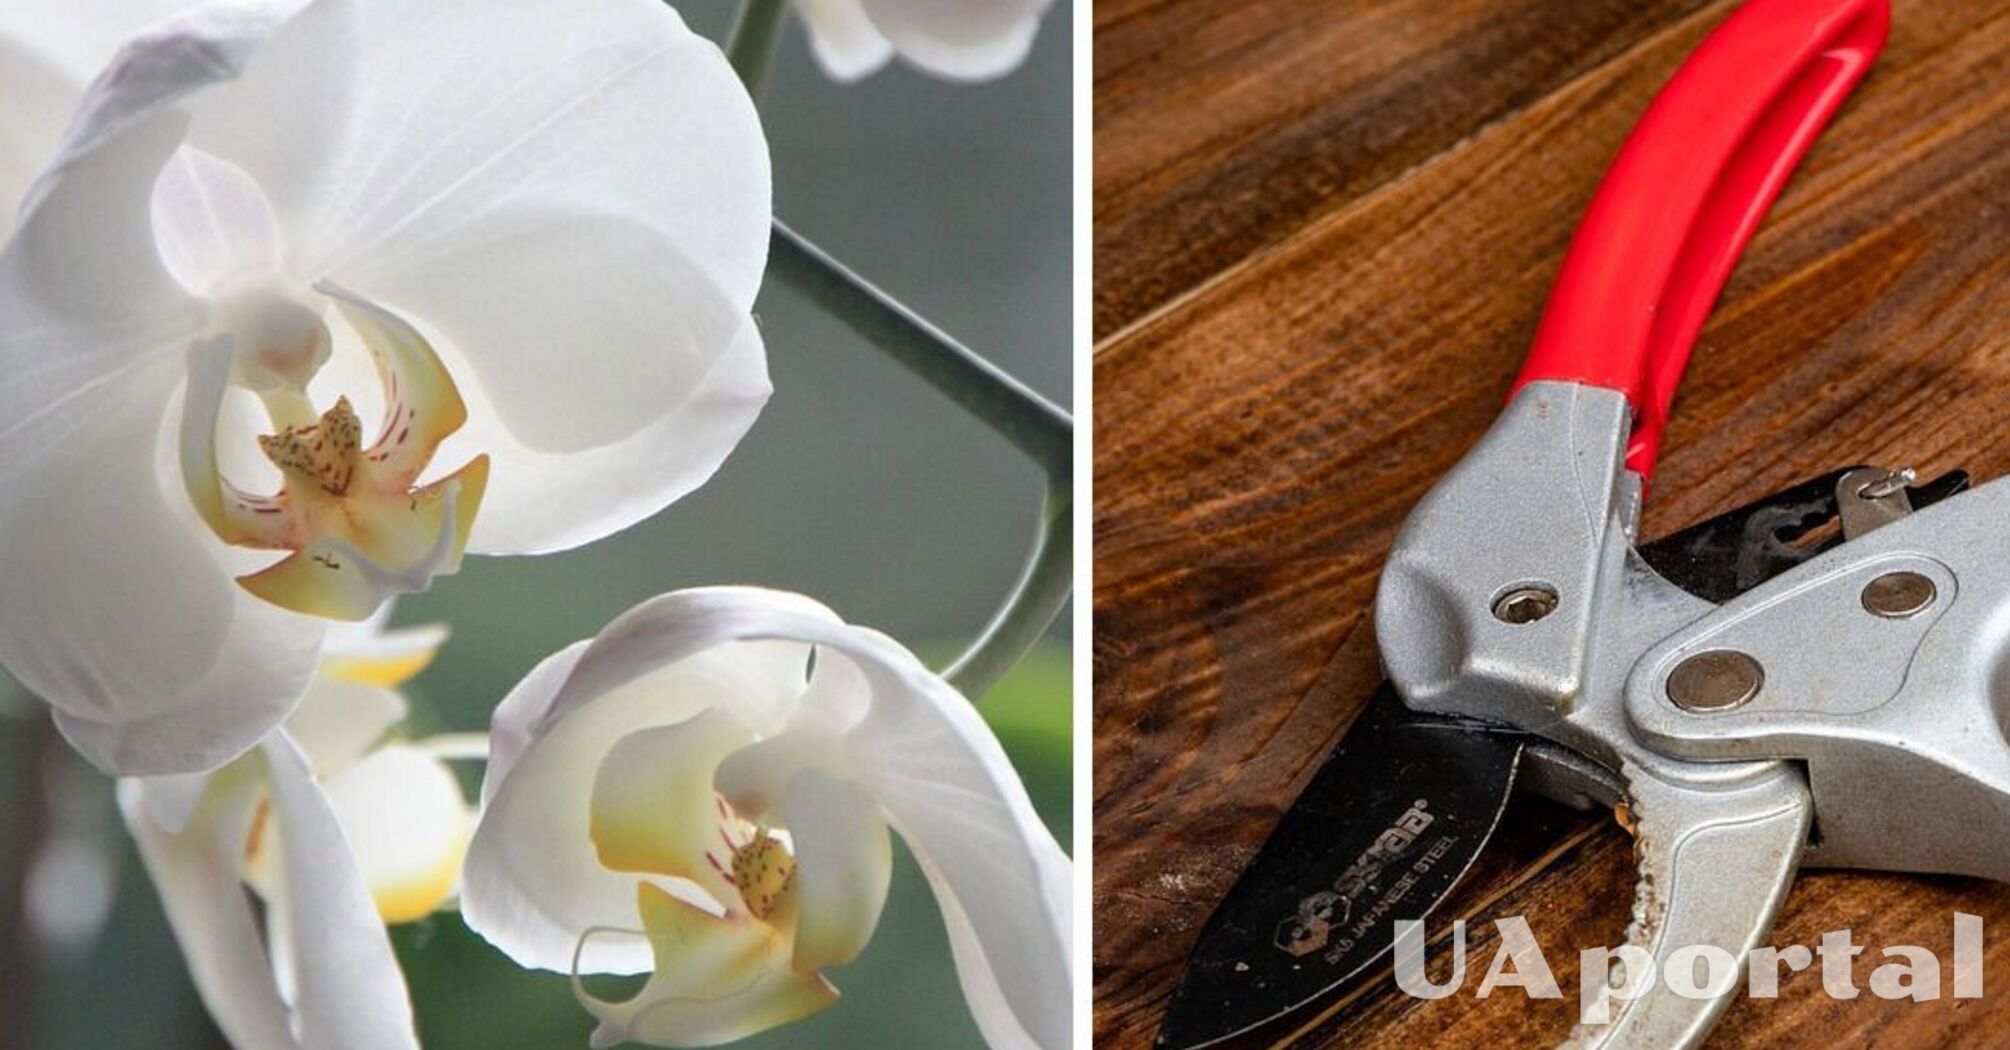 Експерти пояснили, як правильно обрізати орхідею, щоб отримати пишні квіти